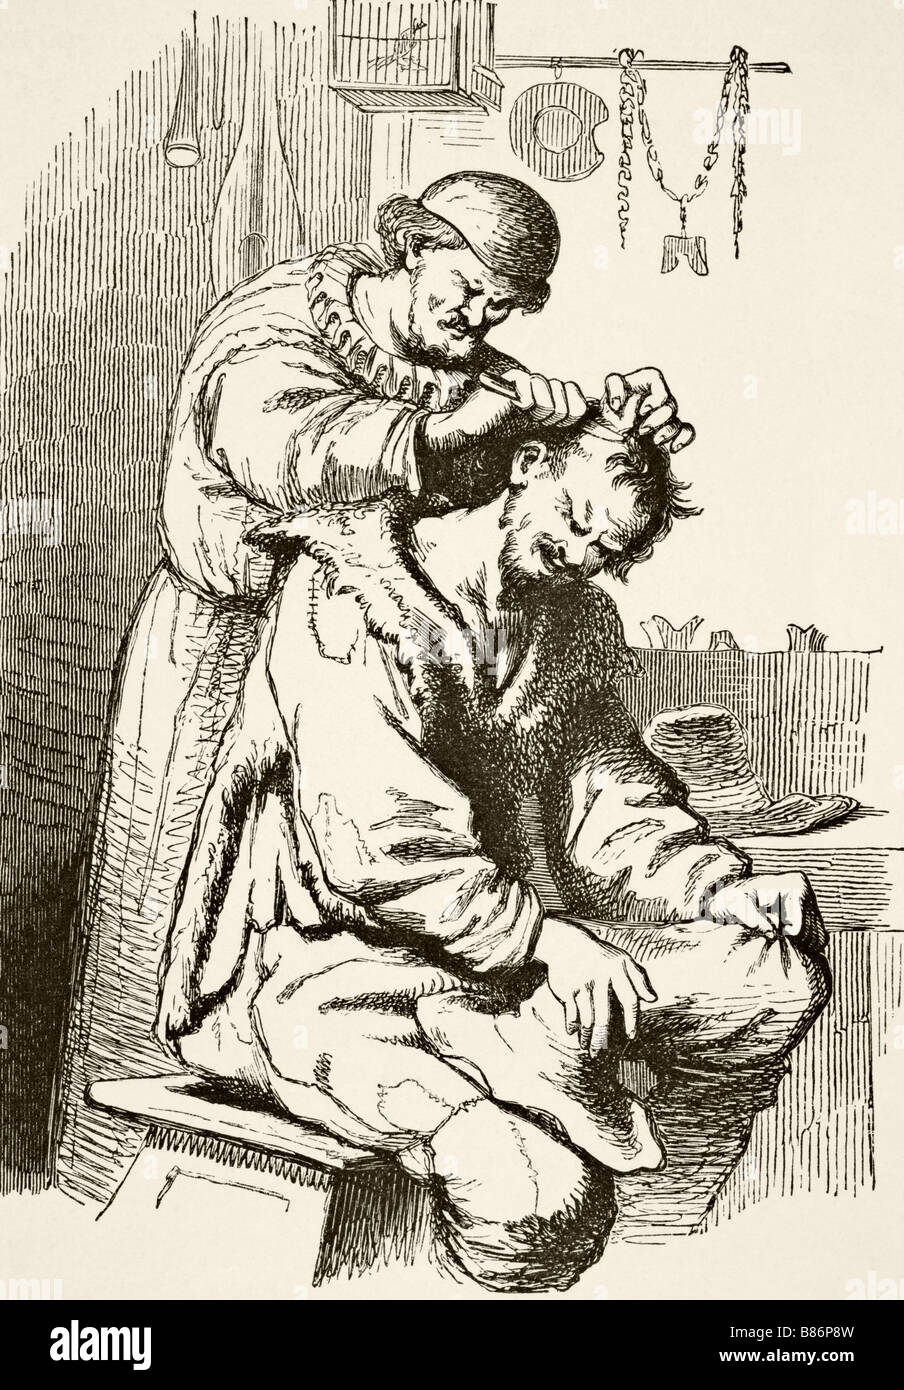 Ein Arzt, der eine Operation durchführt. Nach einer Gravur aus dem 17. Jahrhundert. Stockfoto